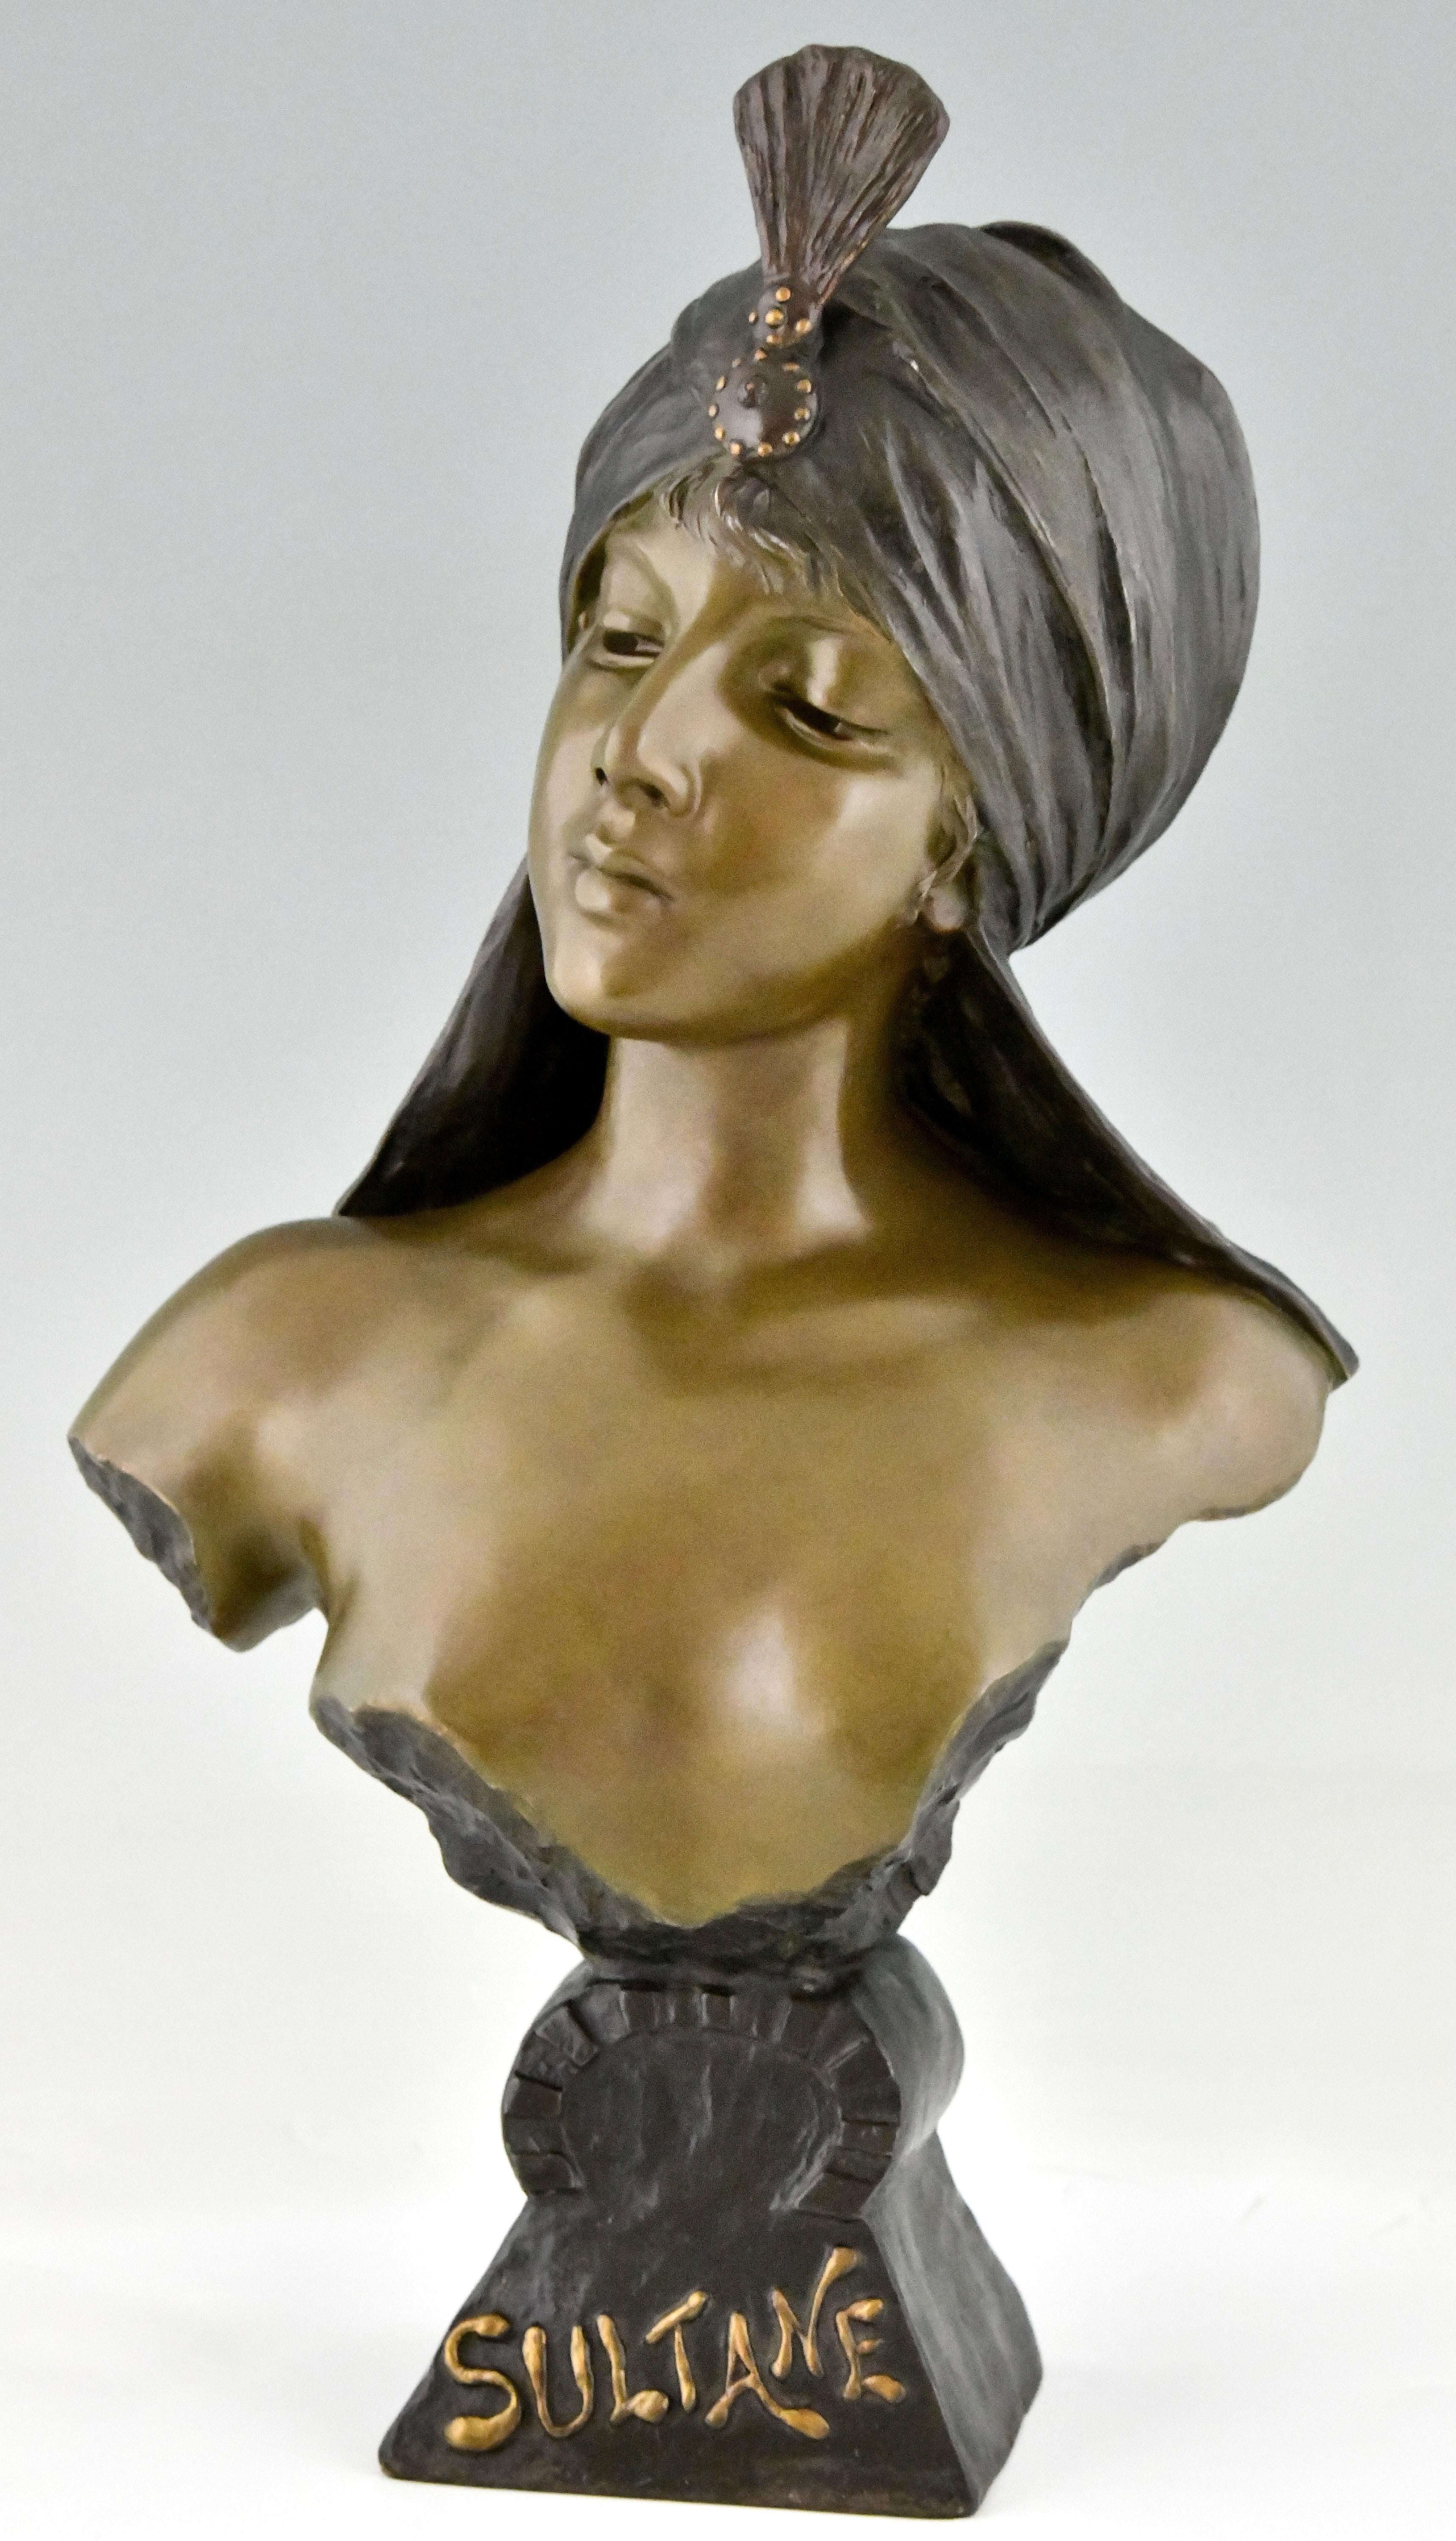 Art Nouveau bust of a woman Sultane signed by Emmanuel Villanis 1890 For Sale 1